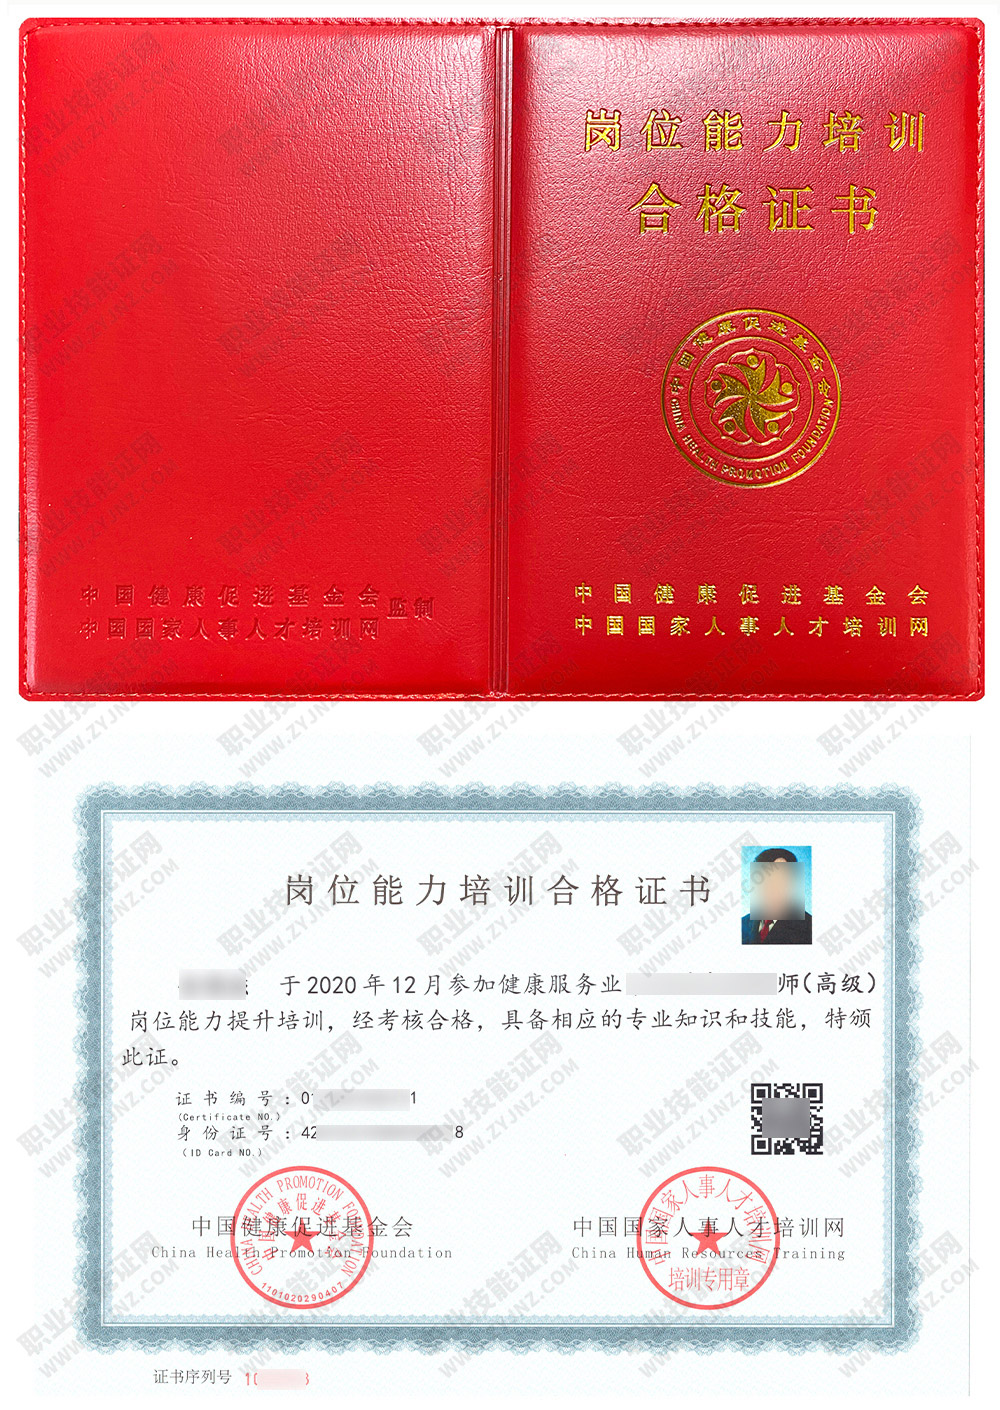 中国国家人事人才培训网 经络调理师 岗位能力培训合格证书